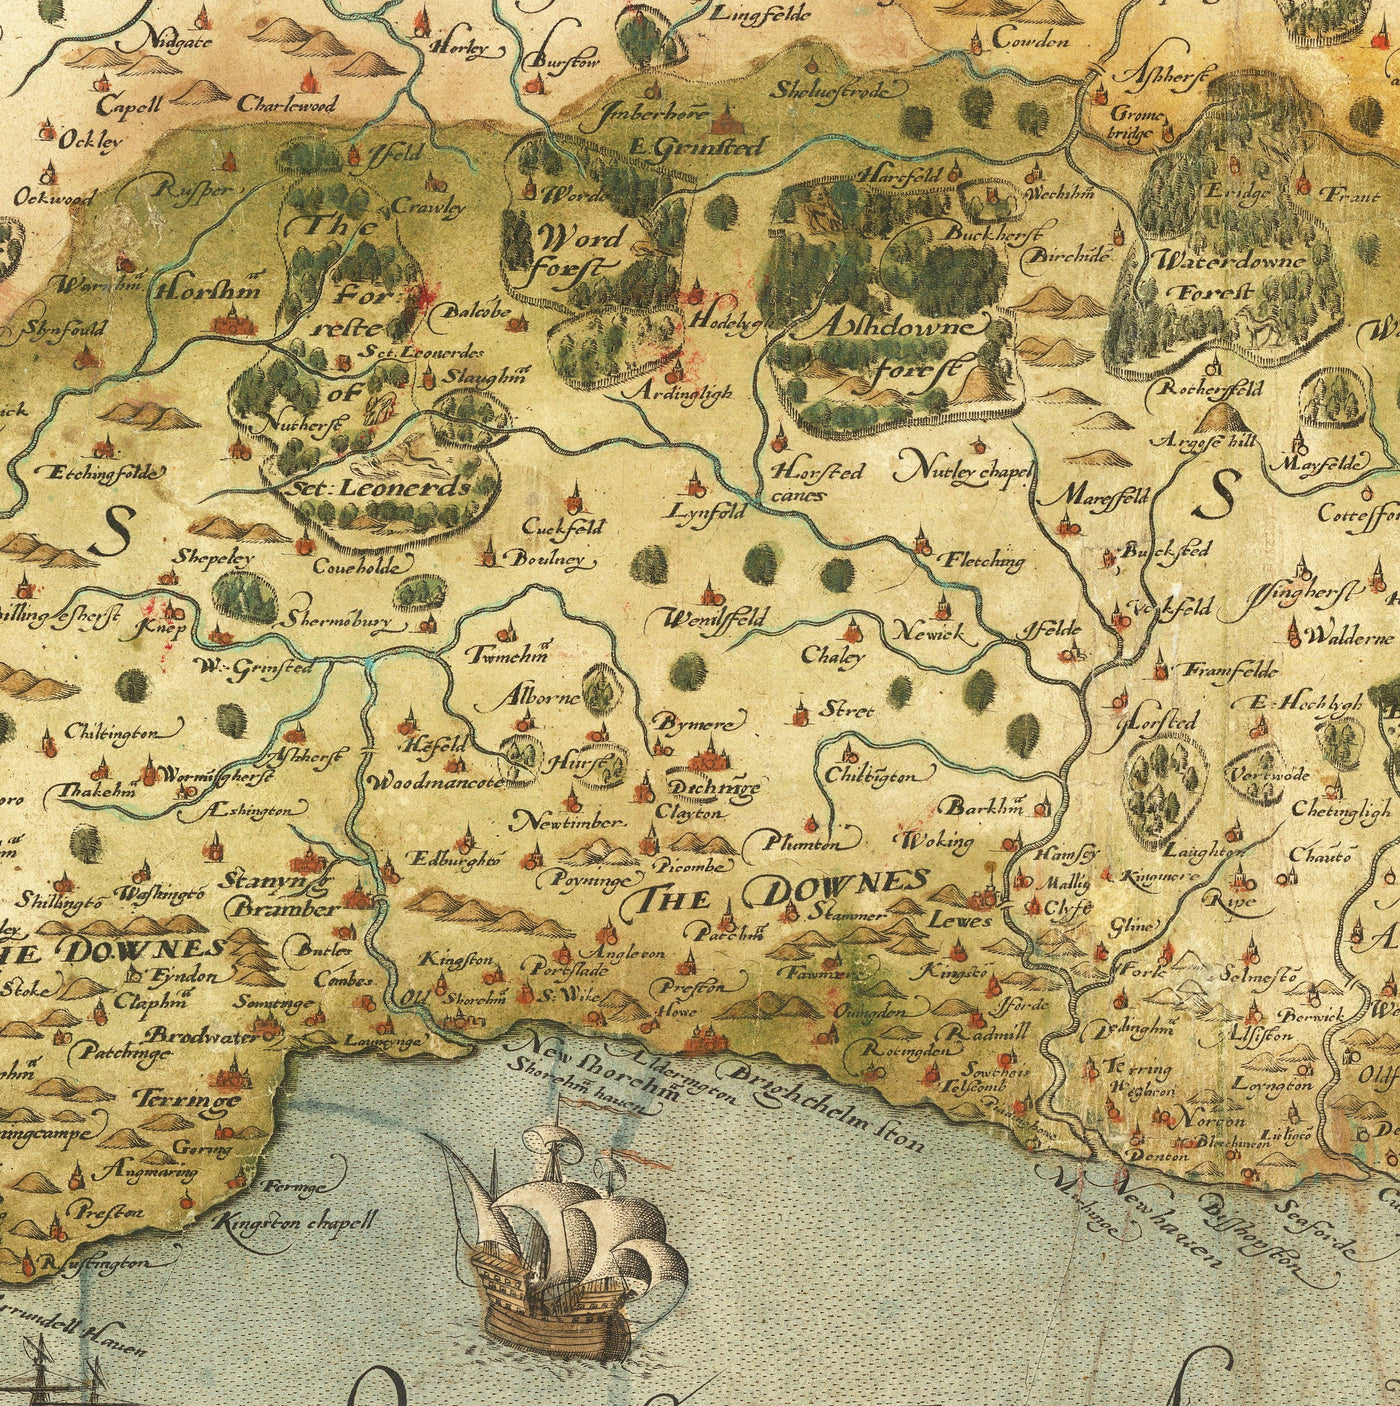 Alte Karte von Südostgland 1575 von SAXTON - seltene erste Karte von London, Kent, Sussex, Surrey, Middlesex